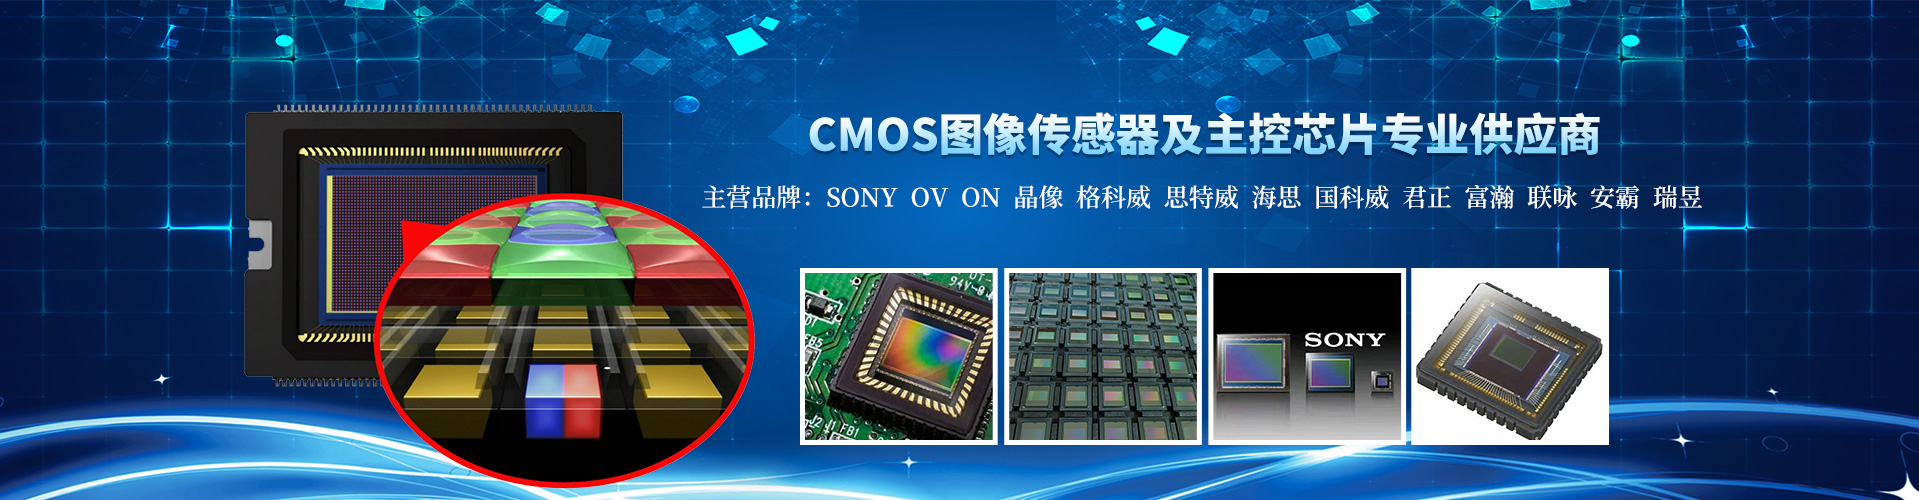 V3 CMOS Sensor